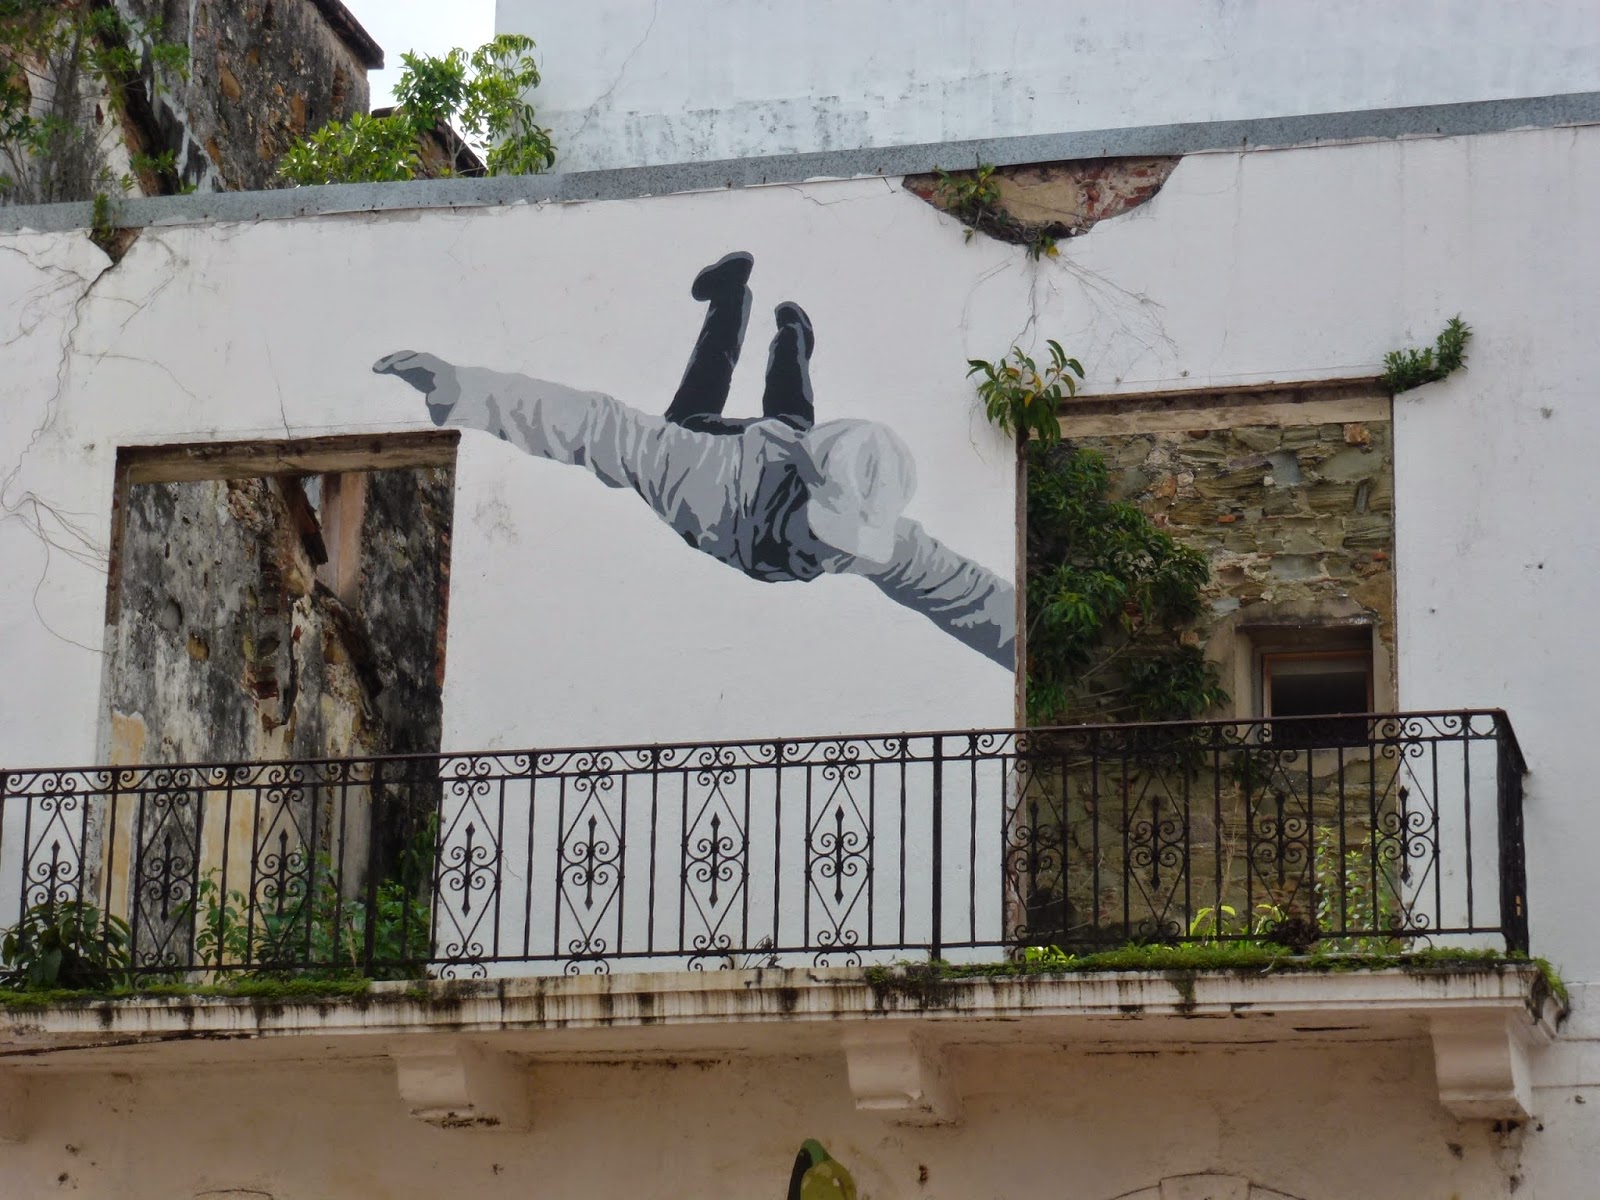 Mural, Wall, Graffiti, Streetart